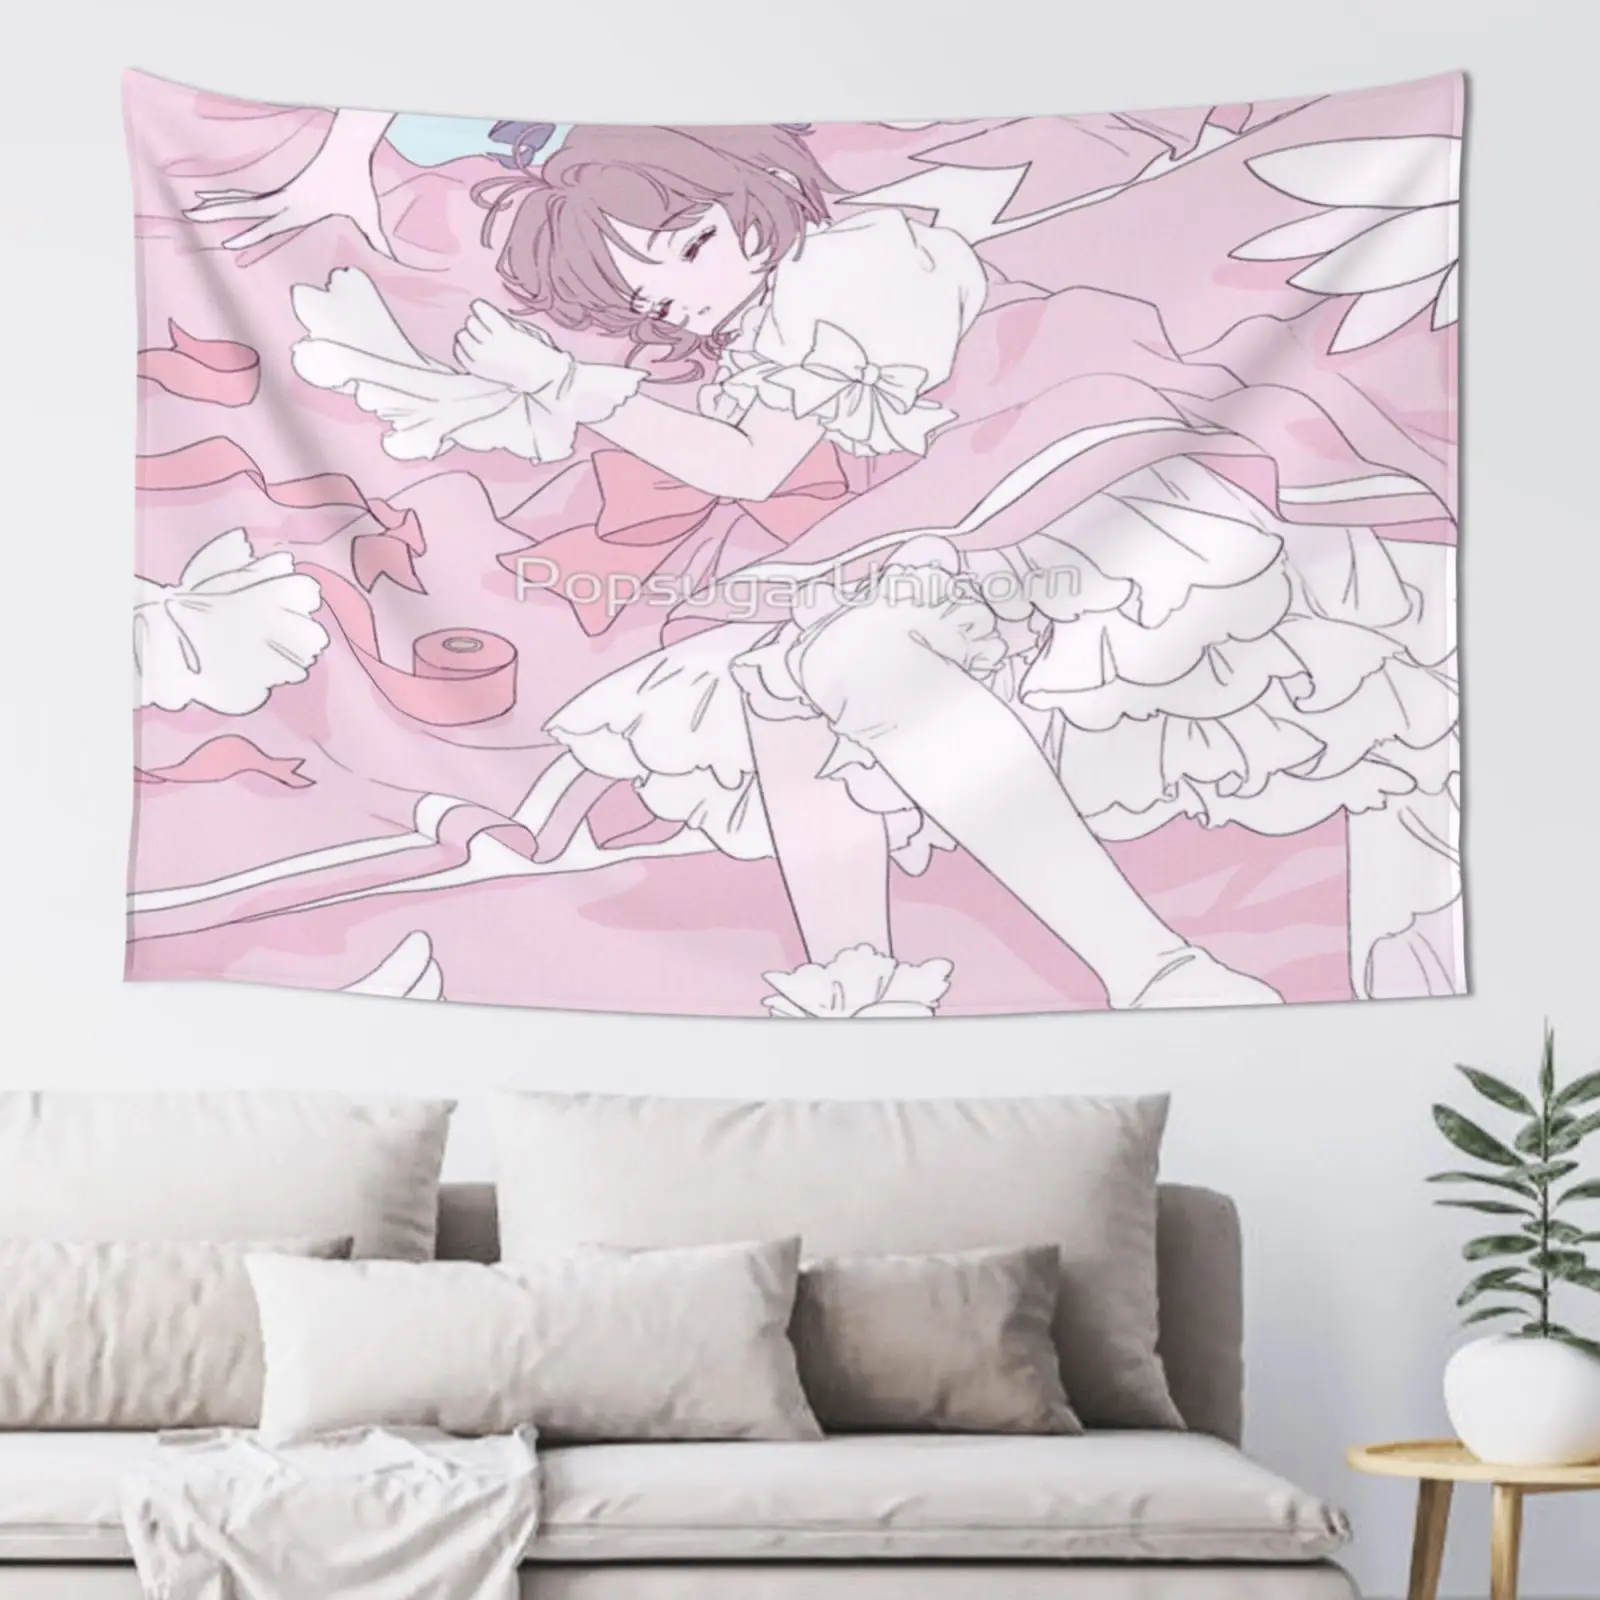 Cardcaptor Sakura Волшебные сладкие сны гобелен